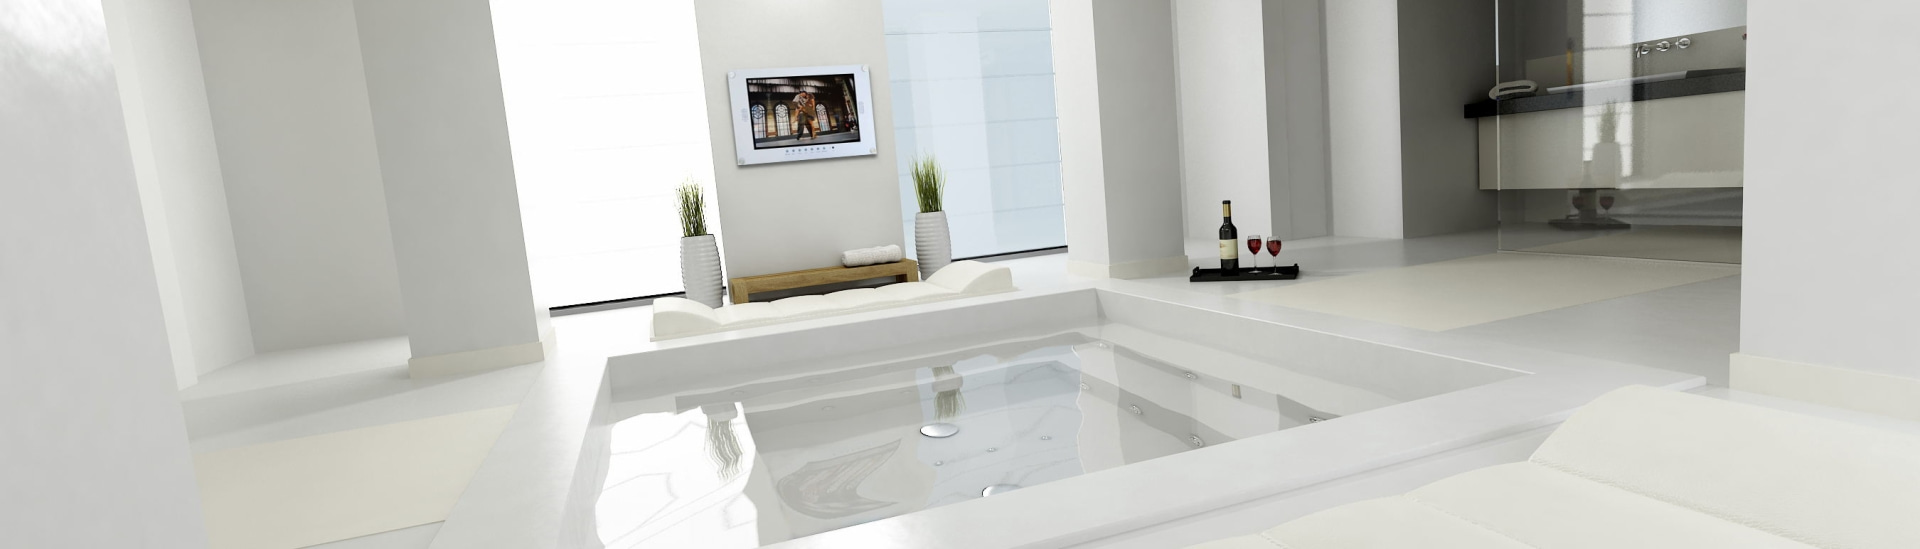 kuvasion smart bathroom tv